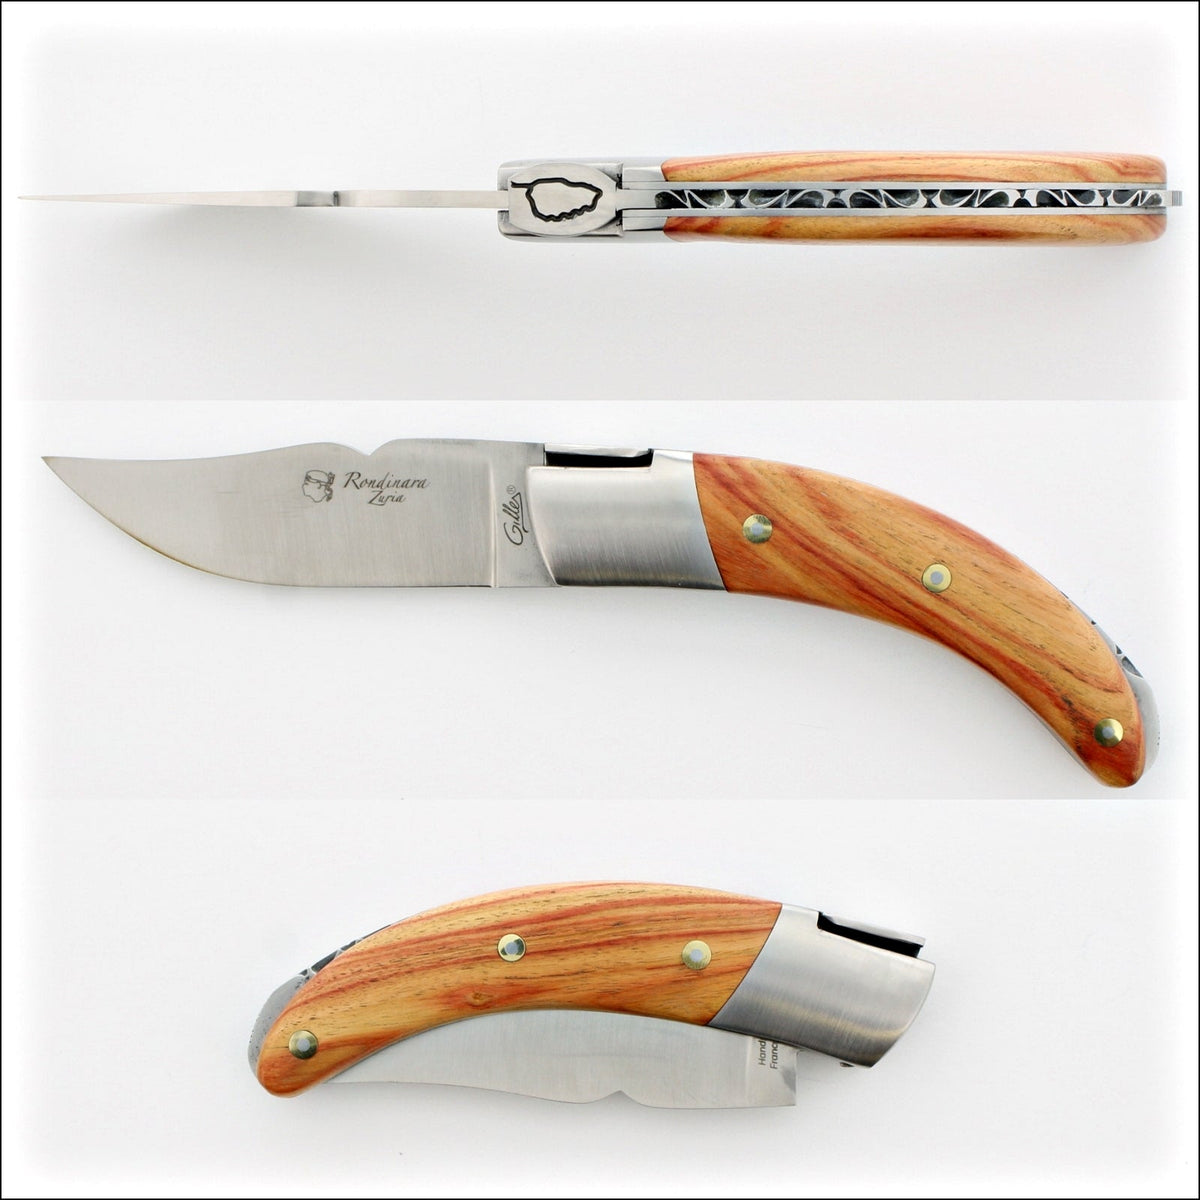 Corsican Rondinara Folding Knife - Rosewood Handle